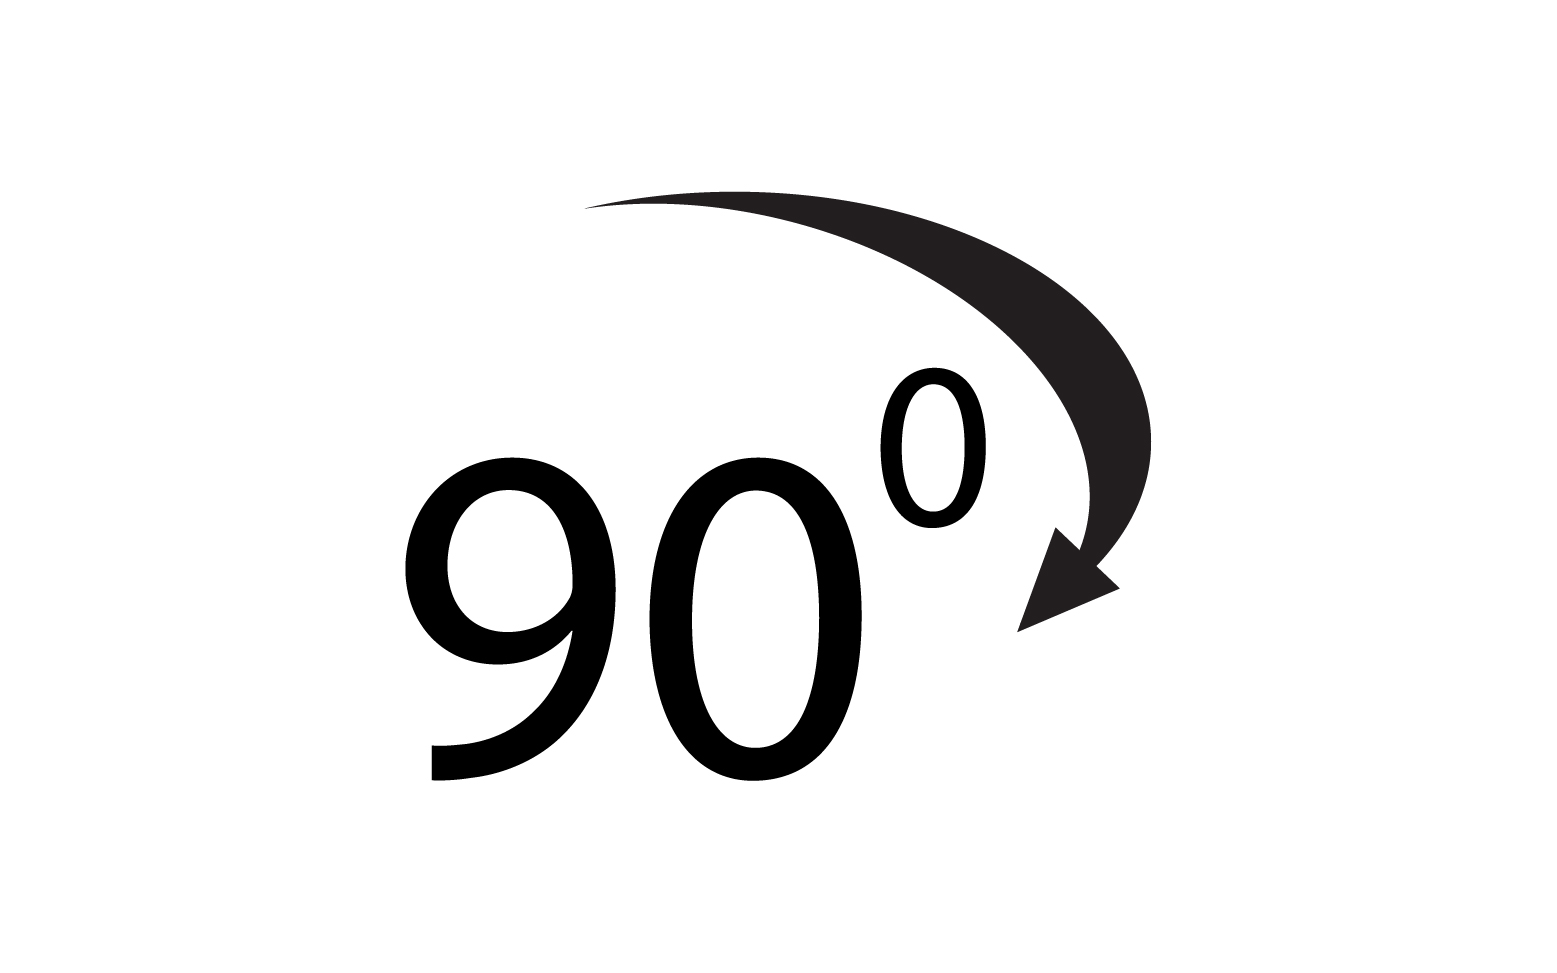 90 degree angle rotation icon symbol logo v32